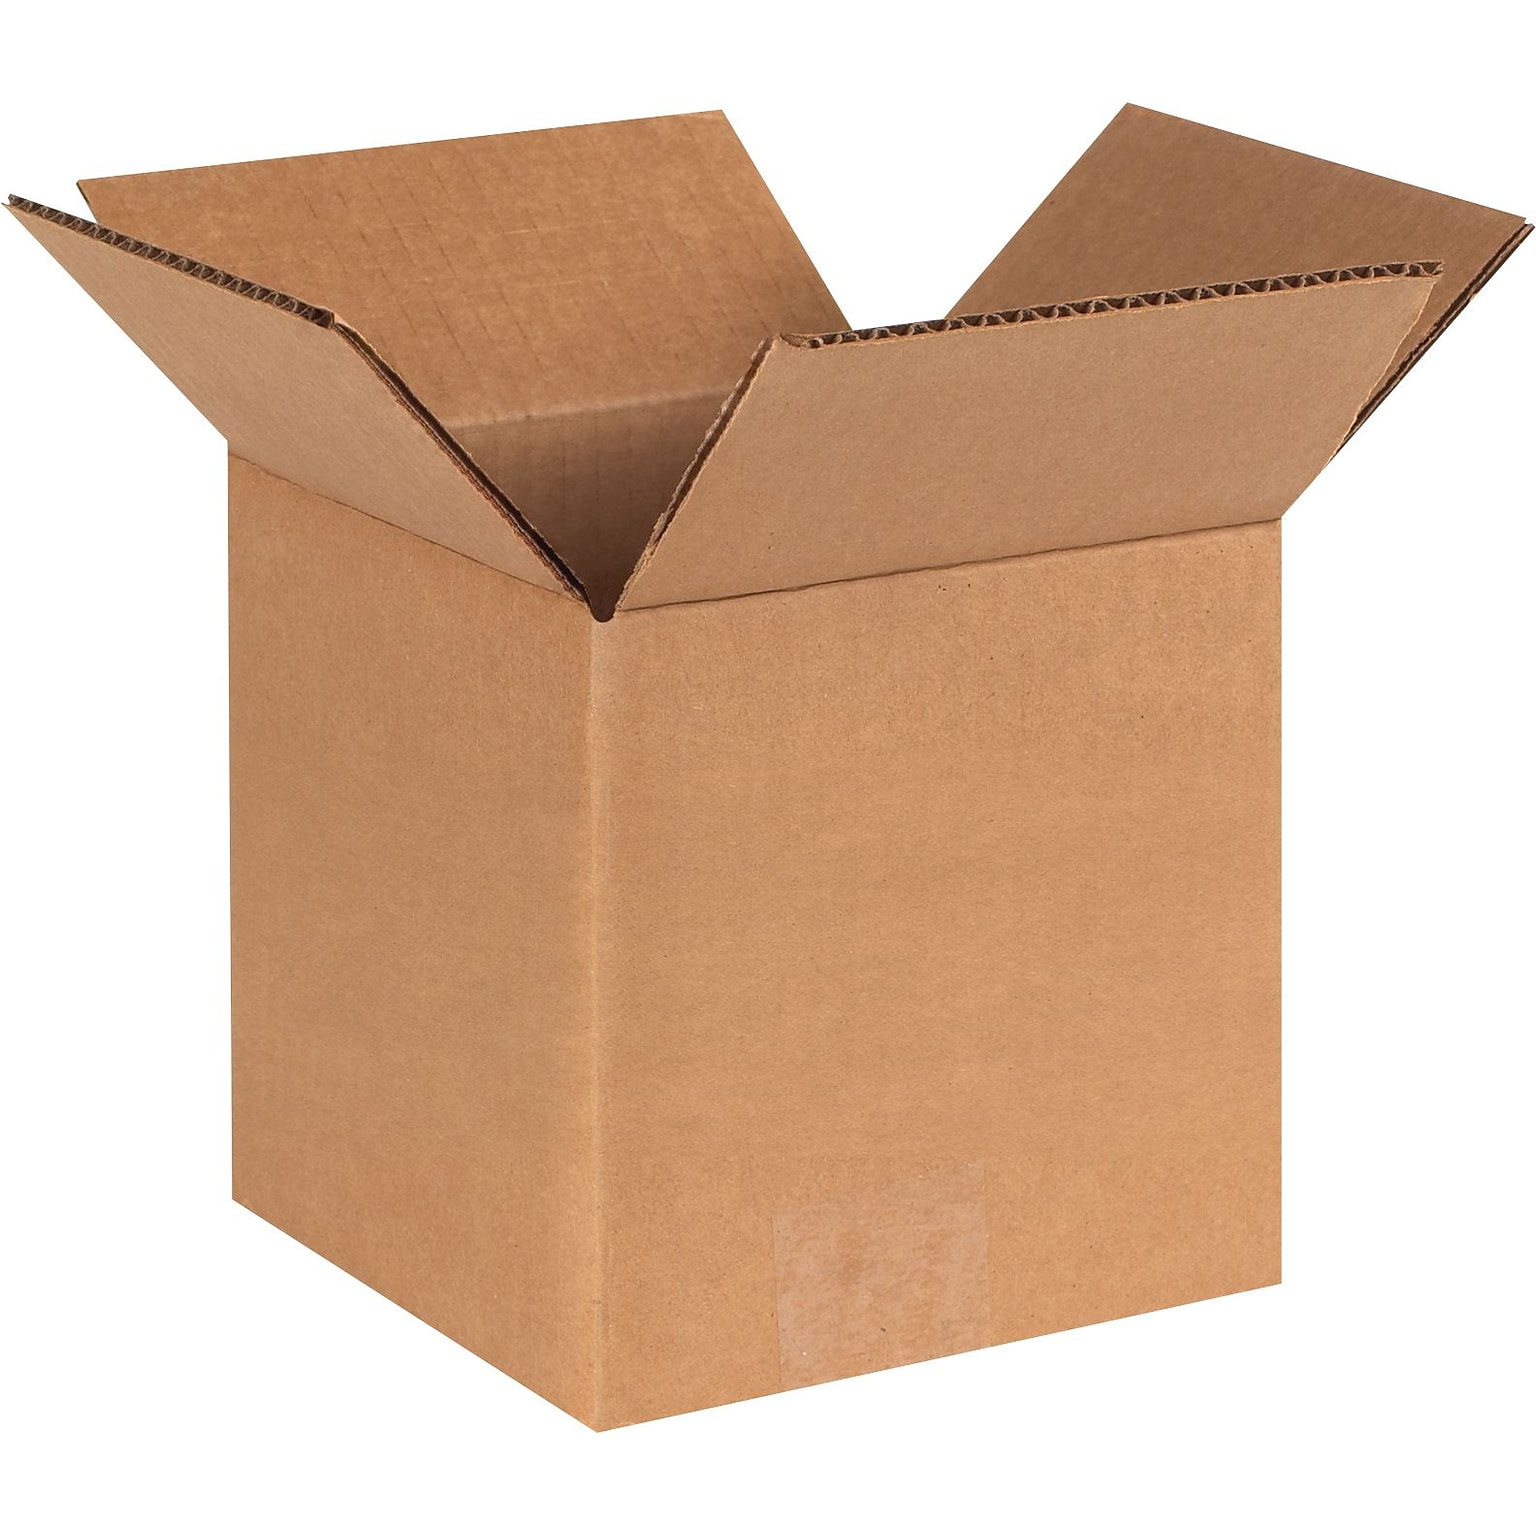 6 x 6 x 6 Shipping Boxes, Brown, 25/Bundle (HD666)